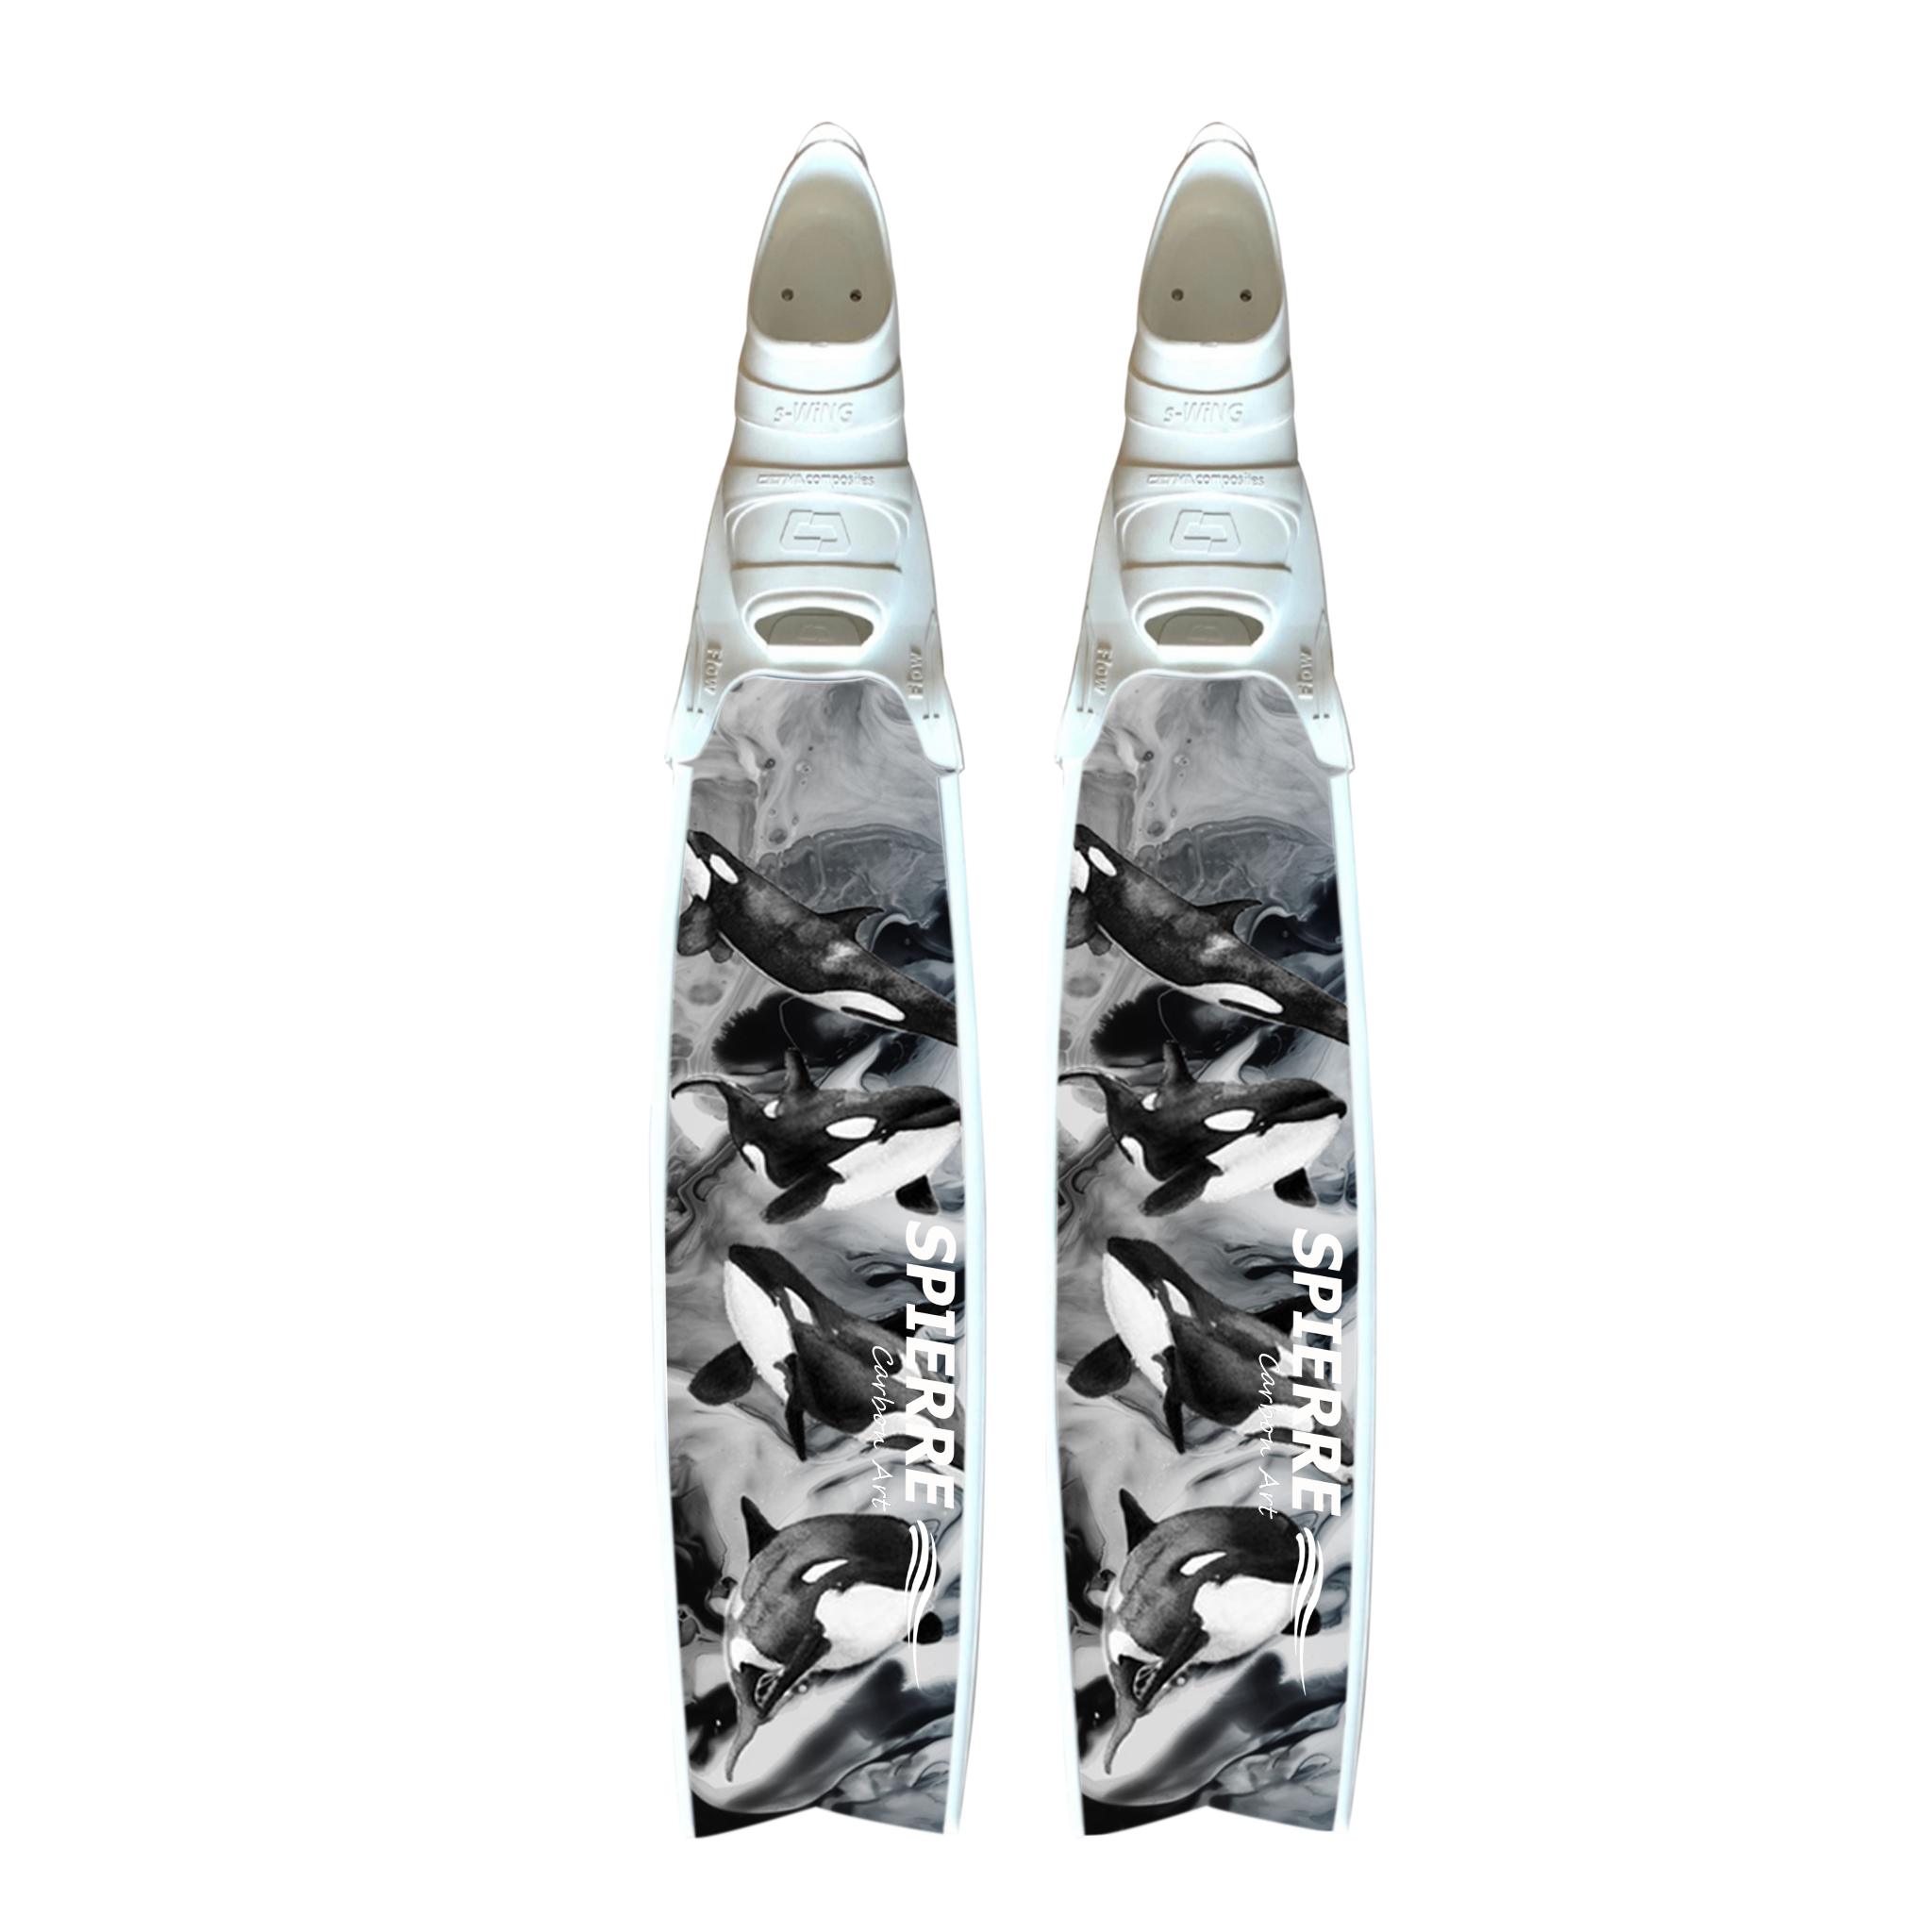 Carbon Art Orca Fin Blades - Apnea Range (Set/Pair) - Spierre